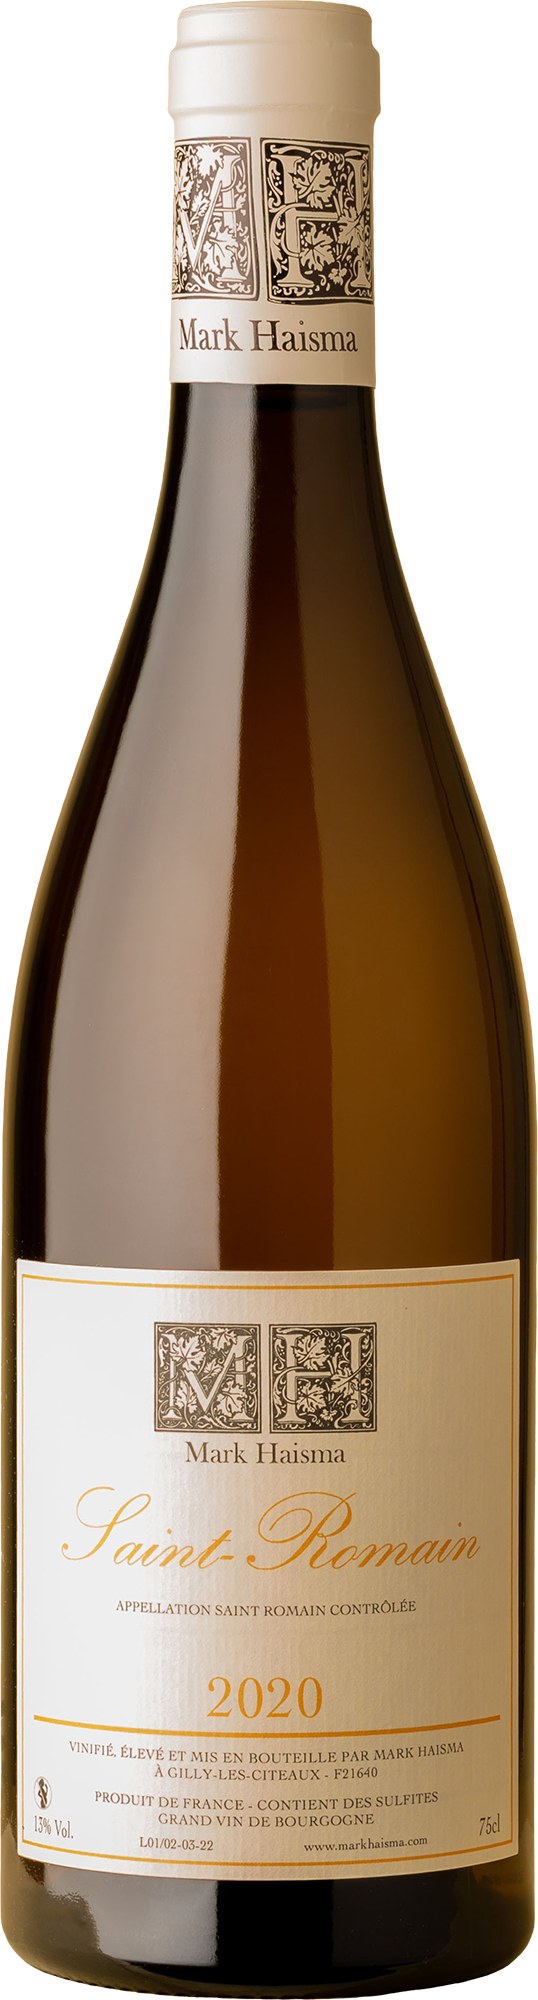 Mark Haisma - Saint-Romain Blanc Chardonnay 2020